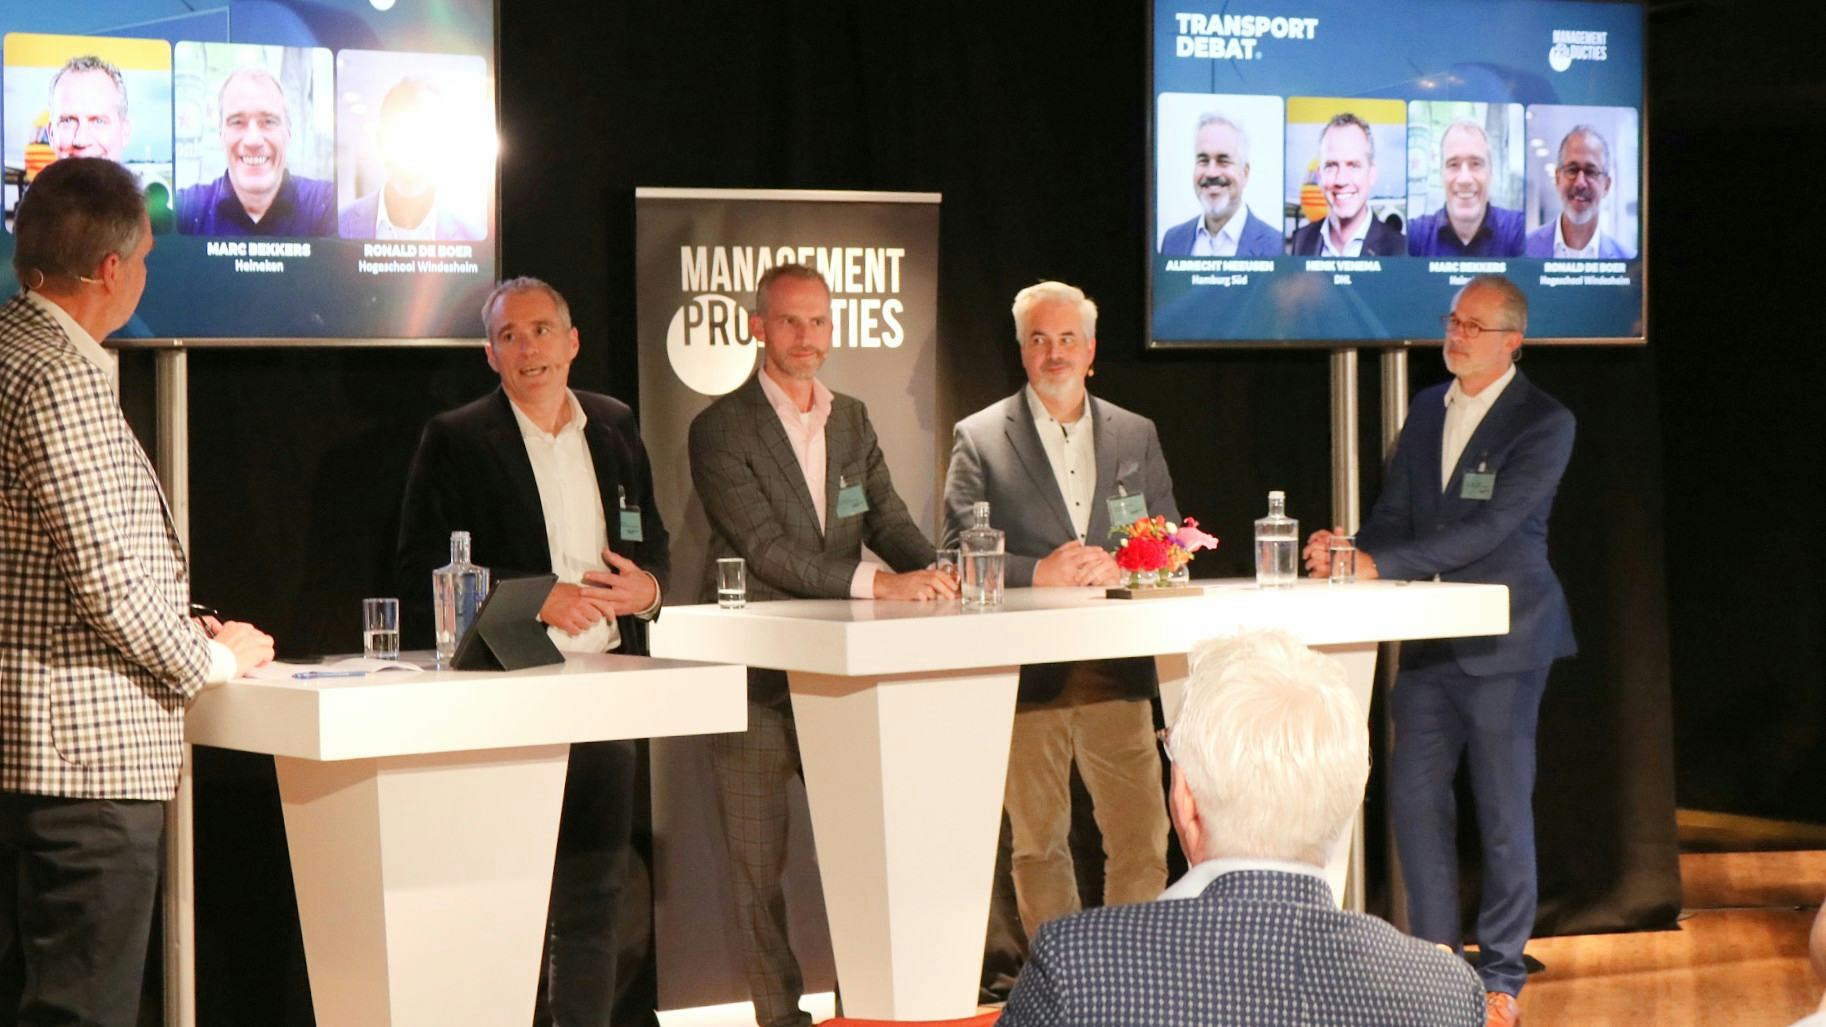 Jan Fransoo, Marc Bekkers, Henk Venema, Albrecht Meeusen, Ronald de Boer